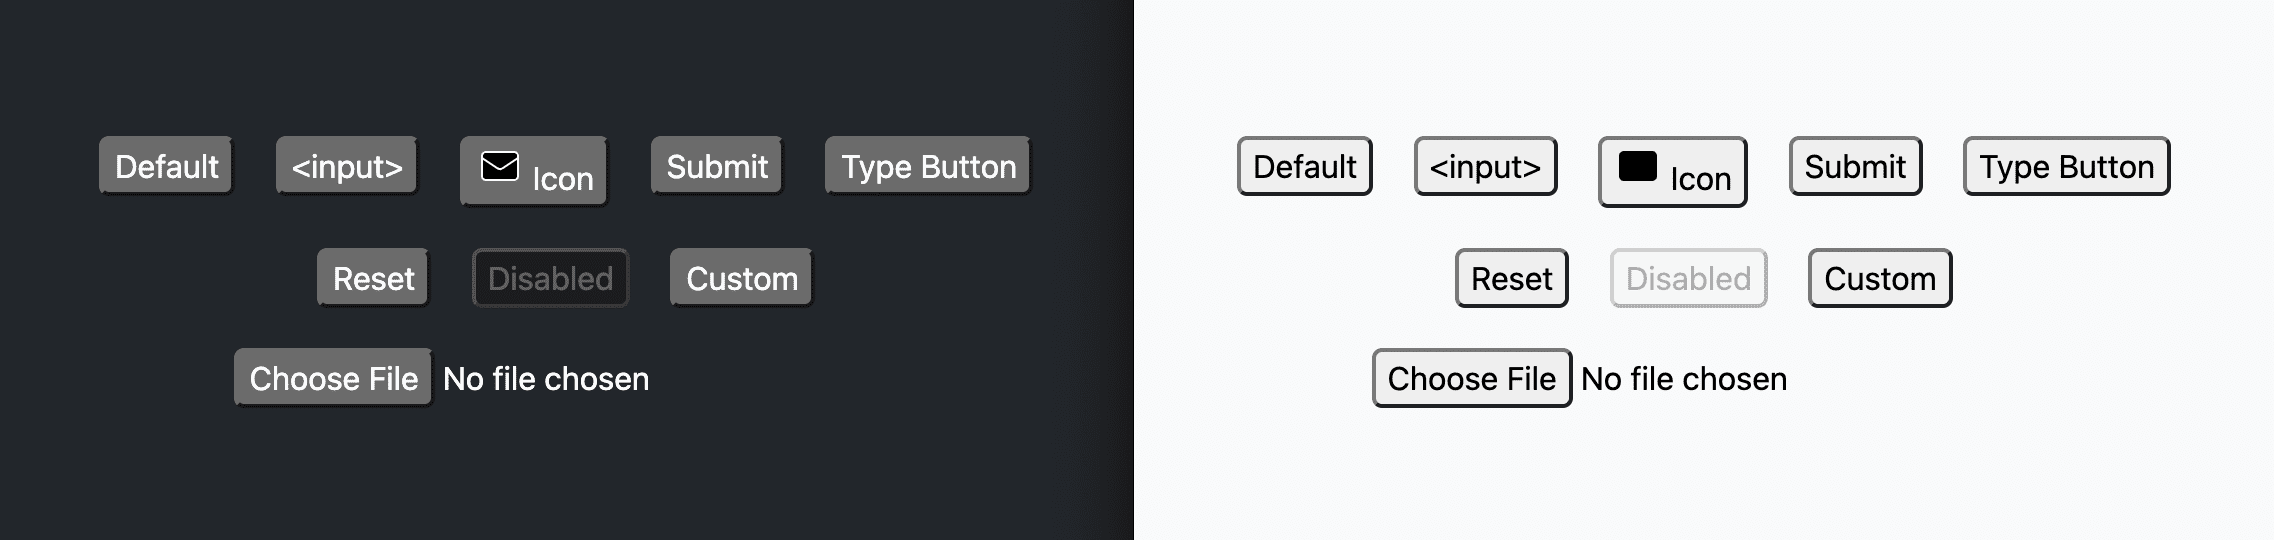 上記のスタイルを適用した後のボタンを示すスクリーンショット